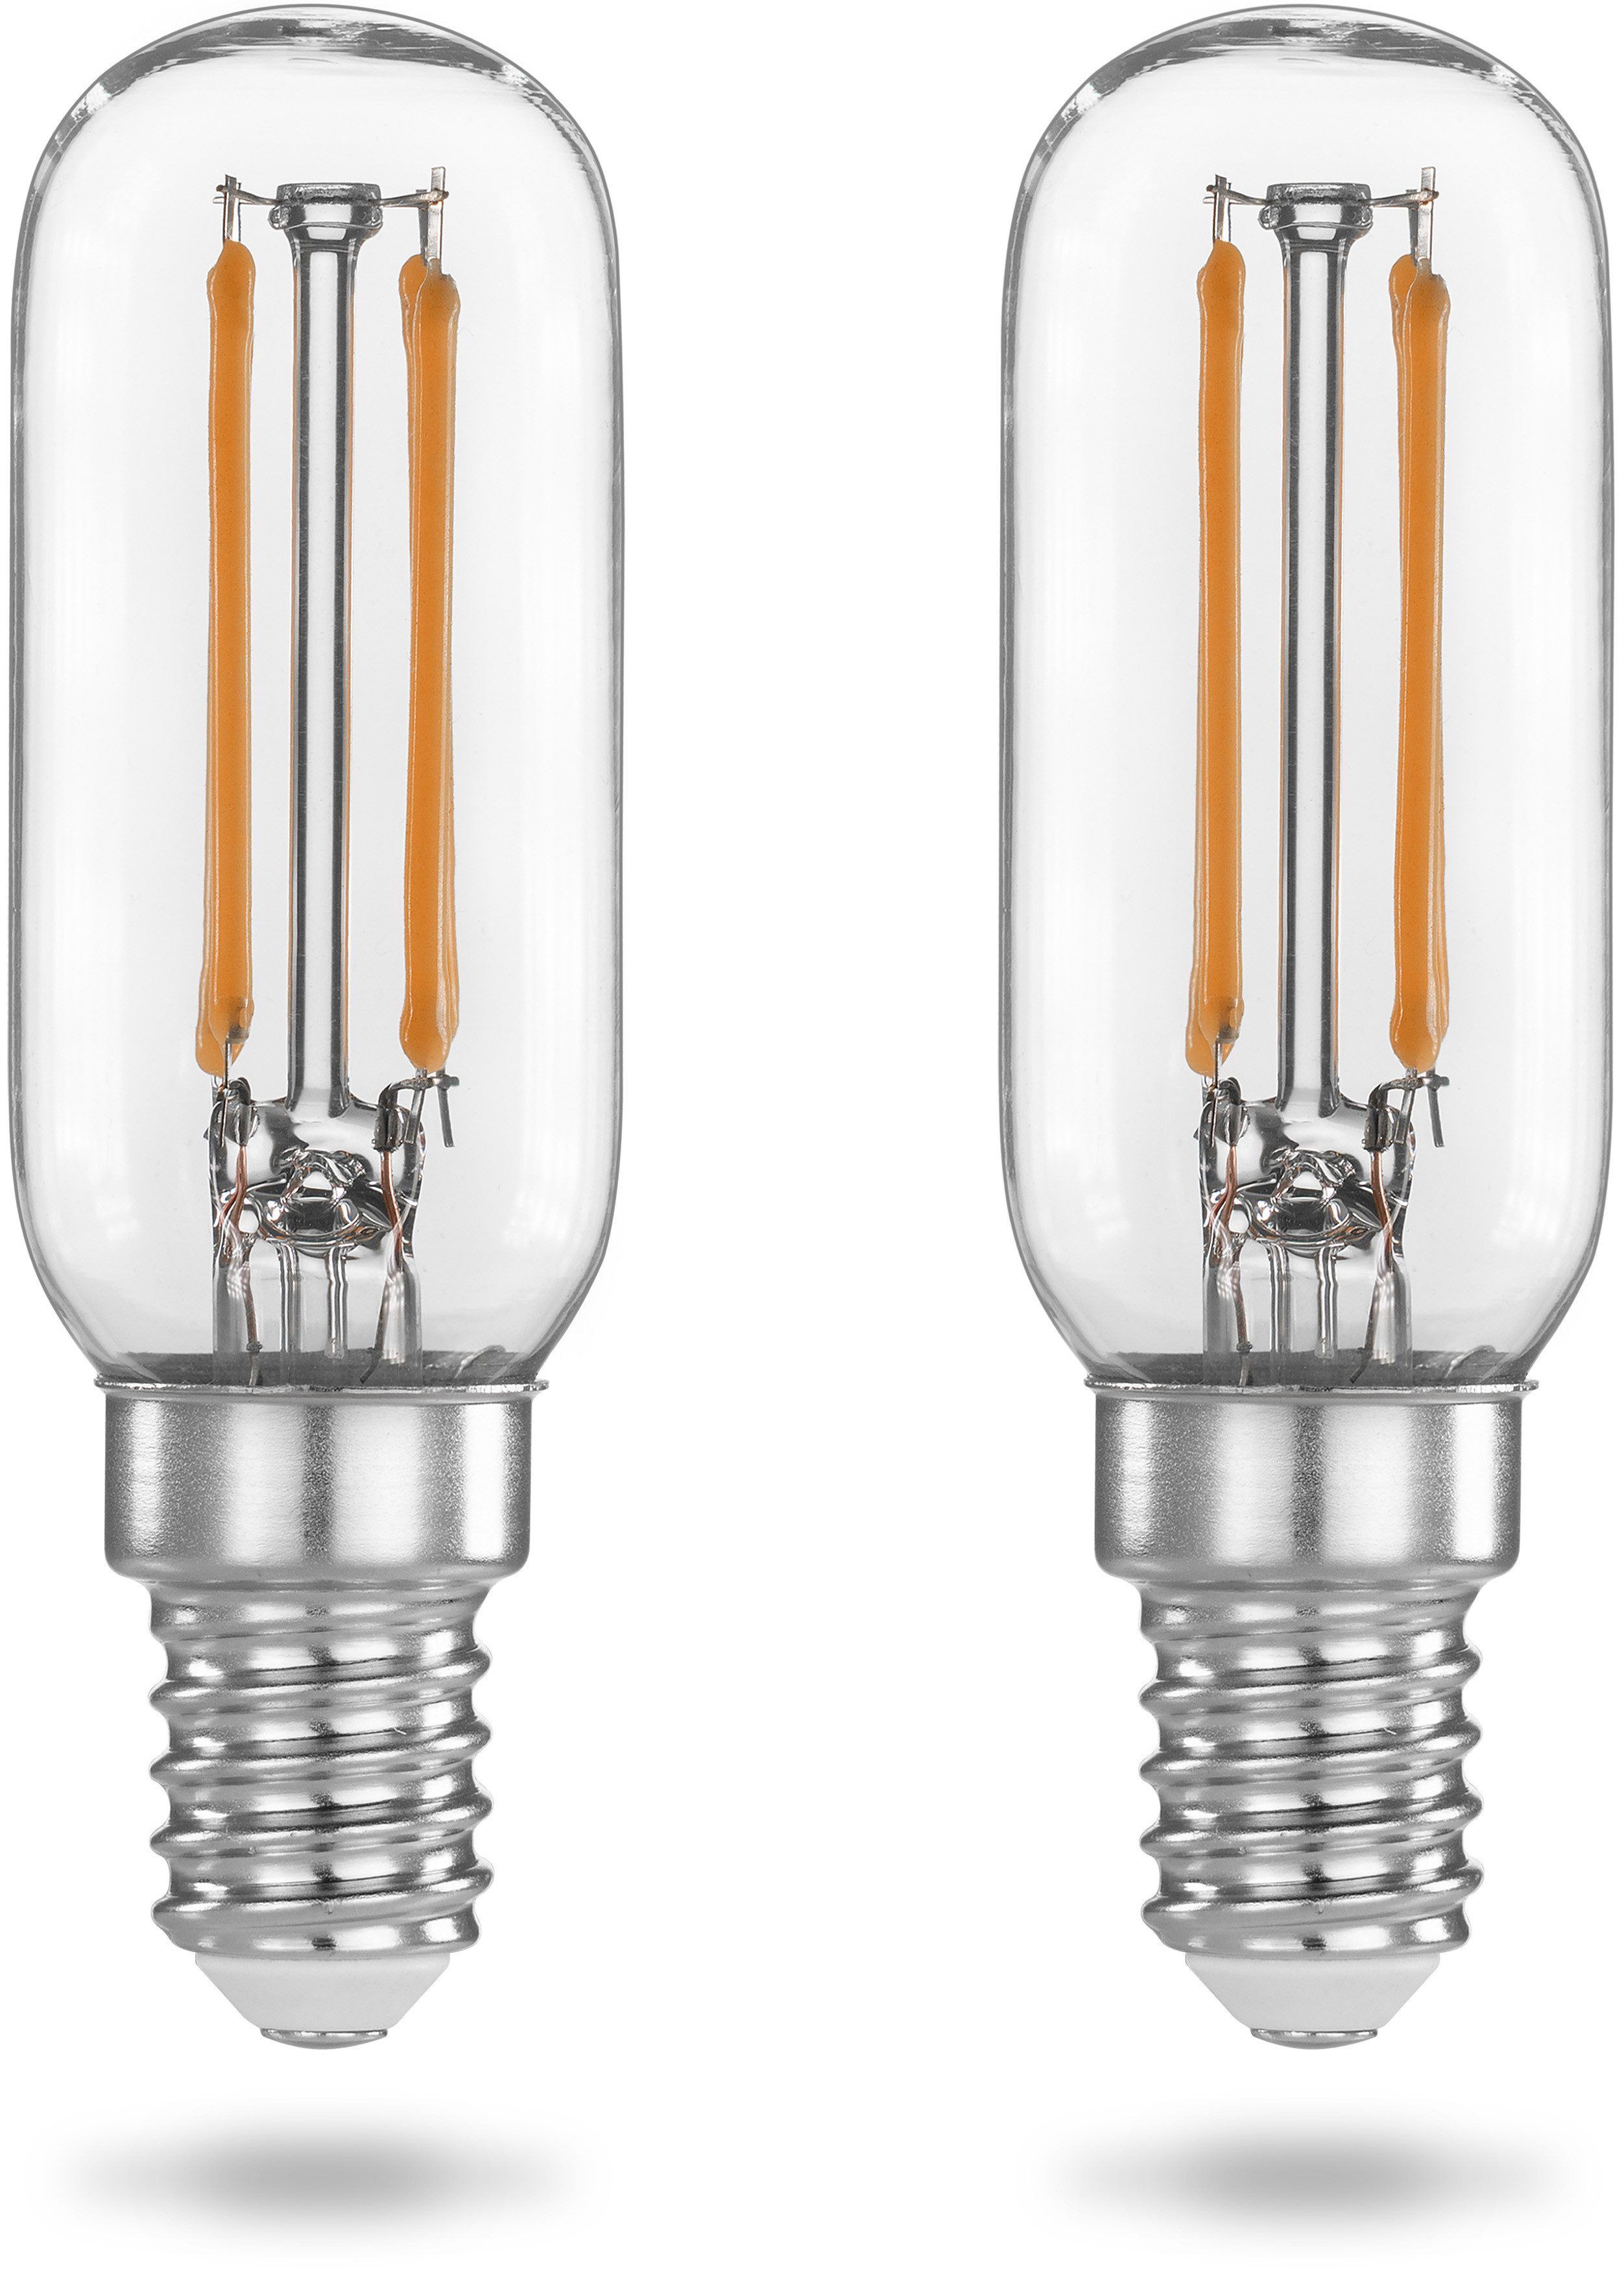 Poppstar Spezialleuchtmittel, E14, 2 St., Warmweiß, Poppstar 2x LED-Lampen für Dunstabzugshauben (E14 4W 2700K warmweiß)